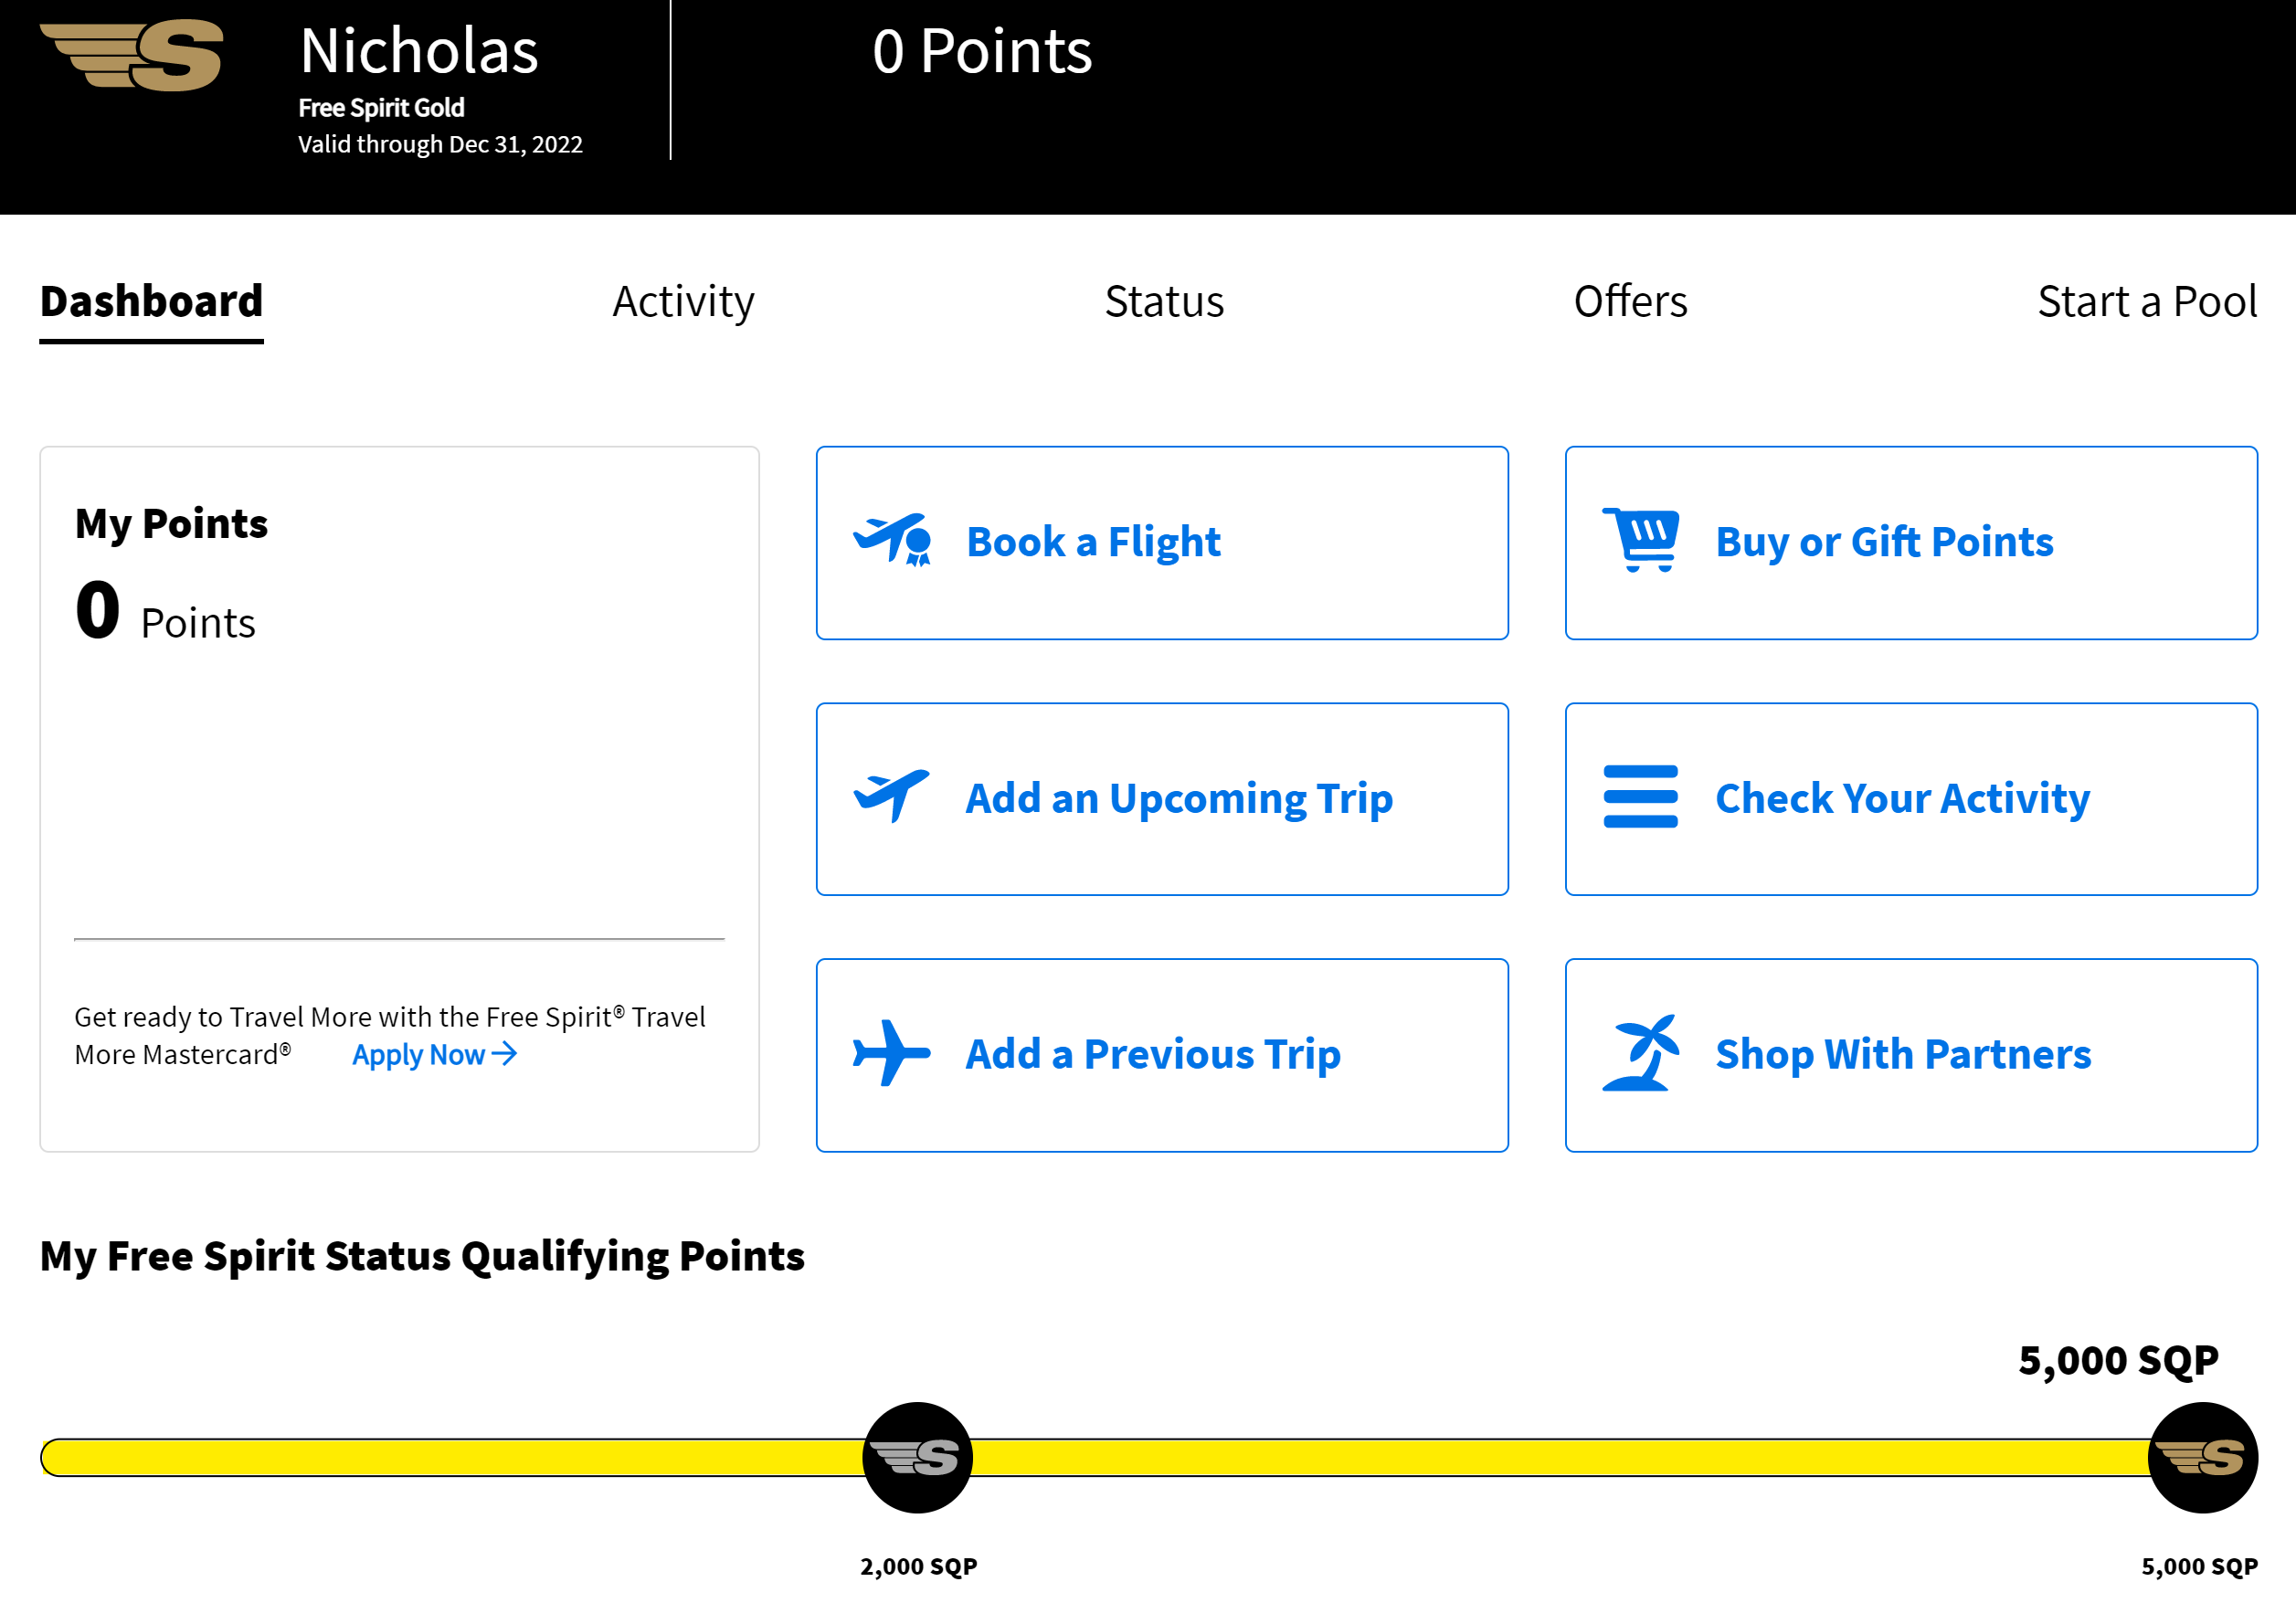 a screenshot of a flight application